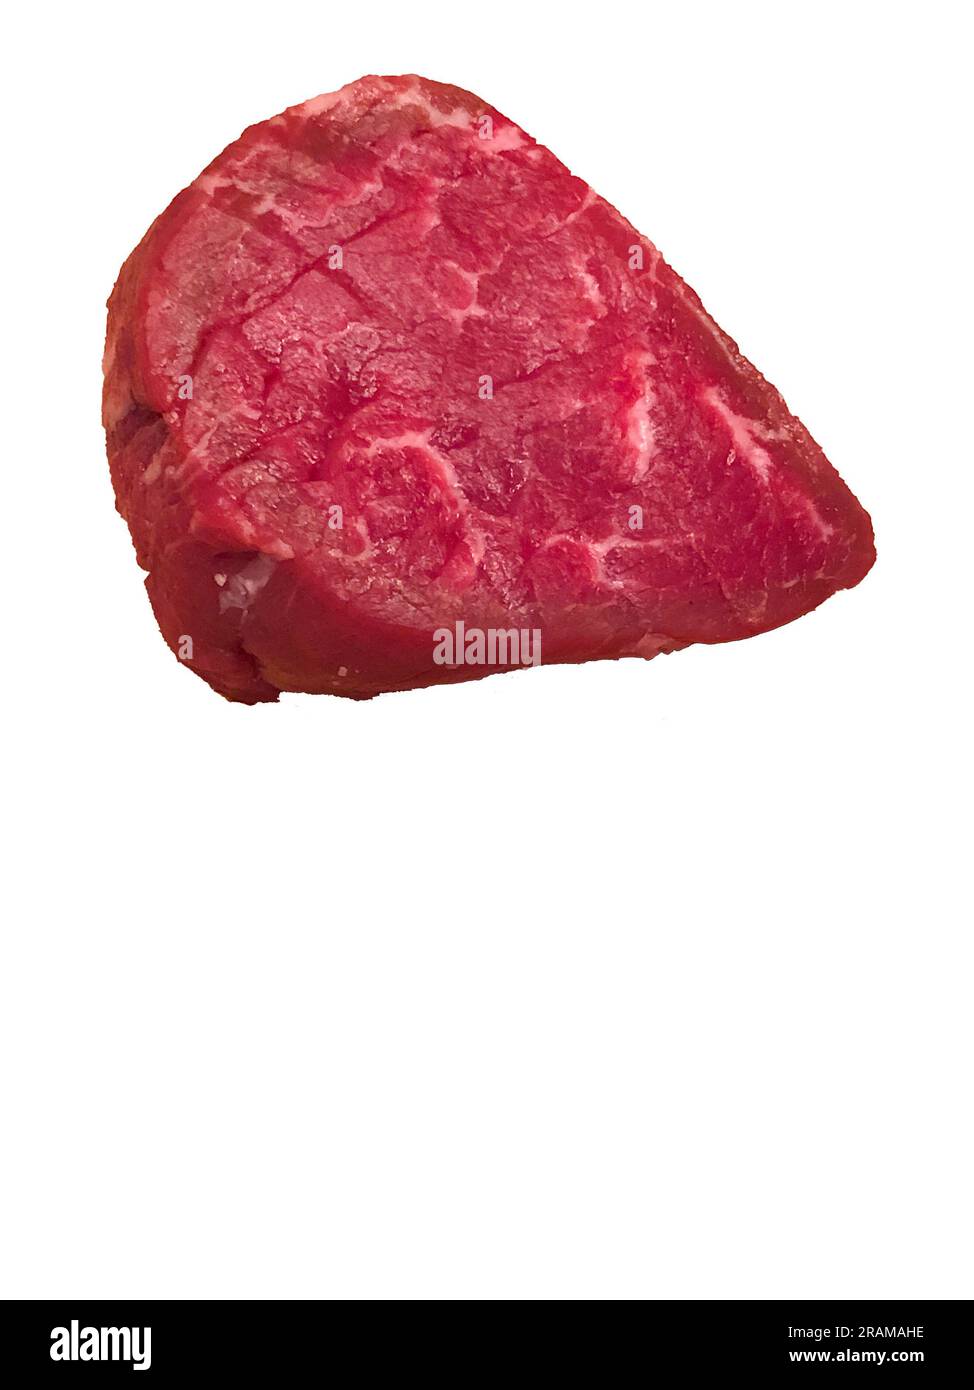 Carne rossa cruda di manzo tagliata Foto Stock